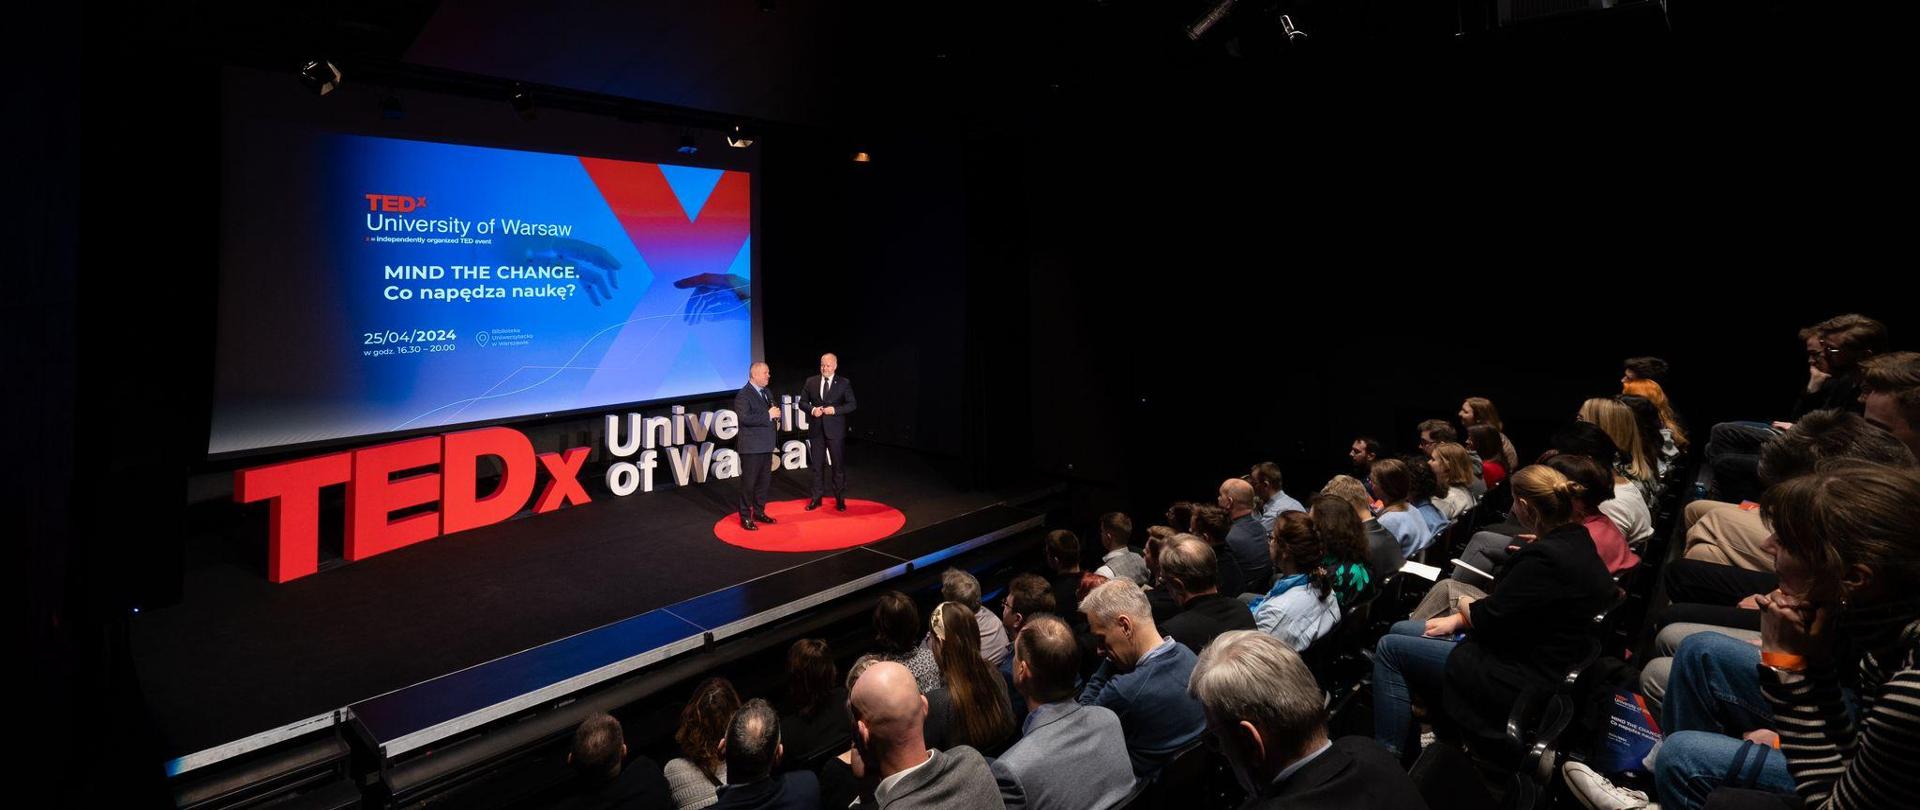 Zdjęcie z boku, zaciemniona sala wypełniona siedzącymi w rzędach krzeseł ludźmi, przed nimi na podwyższeniu stoi wiceminister Gzik i mężczyzna w garniturze, za nimi napis TEDx University of Warsaw ułożony z dużych liter.